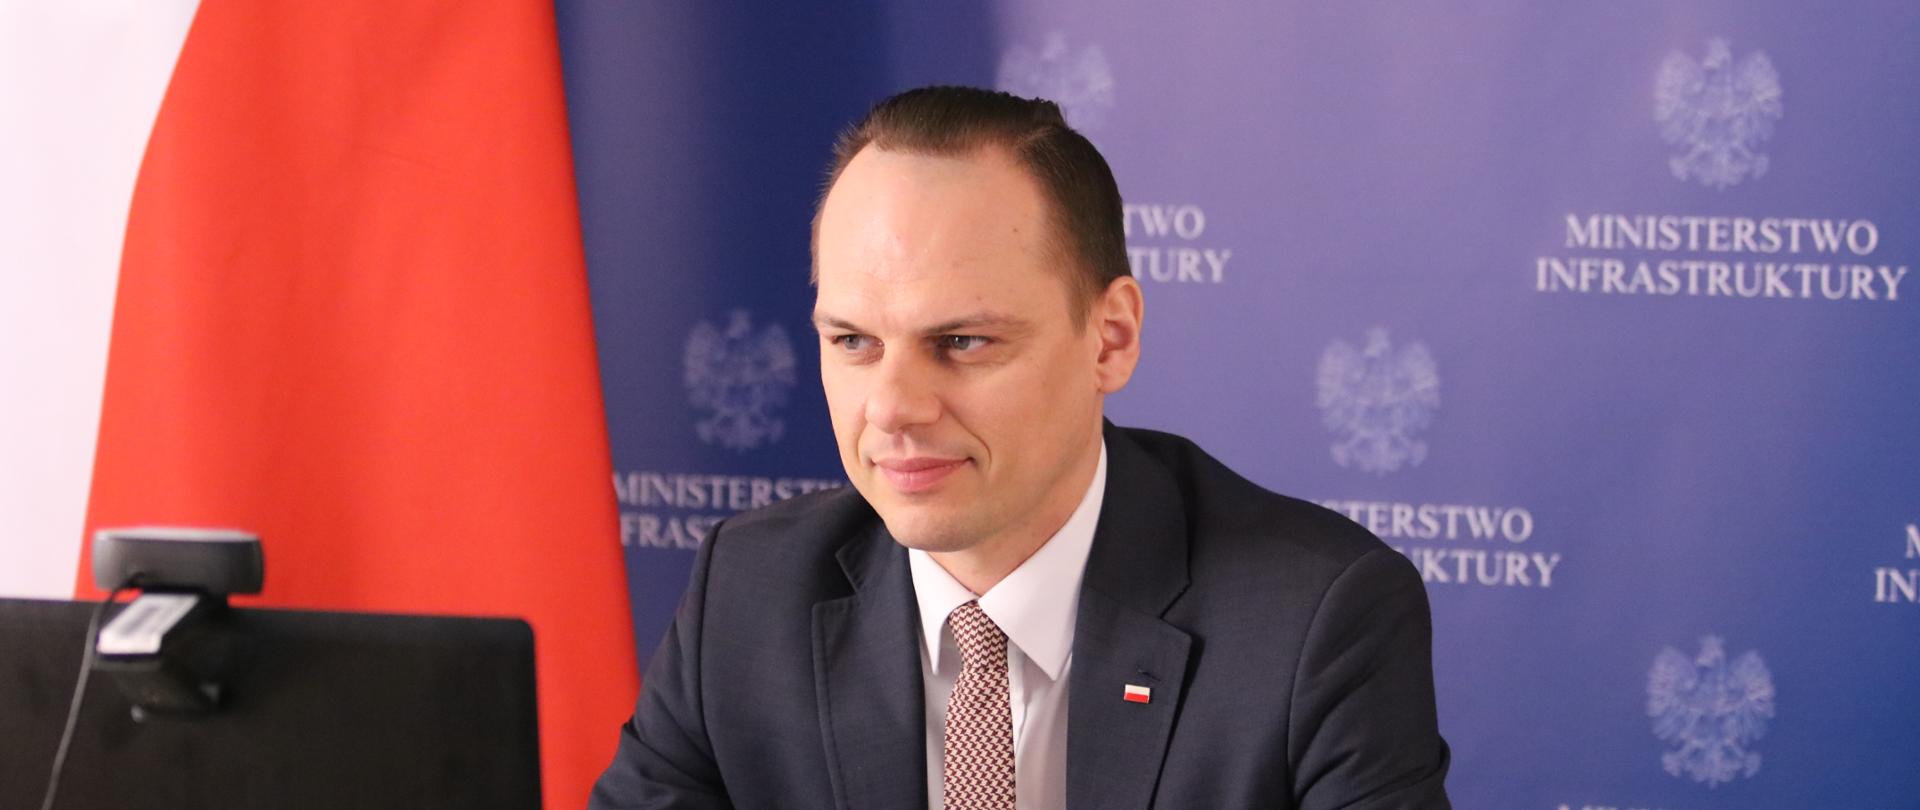 Wiceminister infrastruktury Rafał Weber uczestniczył w wideokonferencji poświęconej podpisaniu umowy na prace przygotowawcze dla obwodnicy Trzebnicy